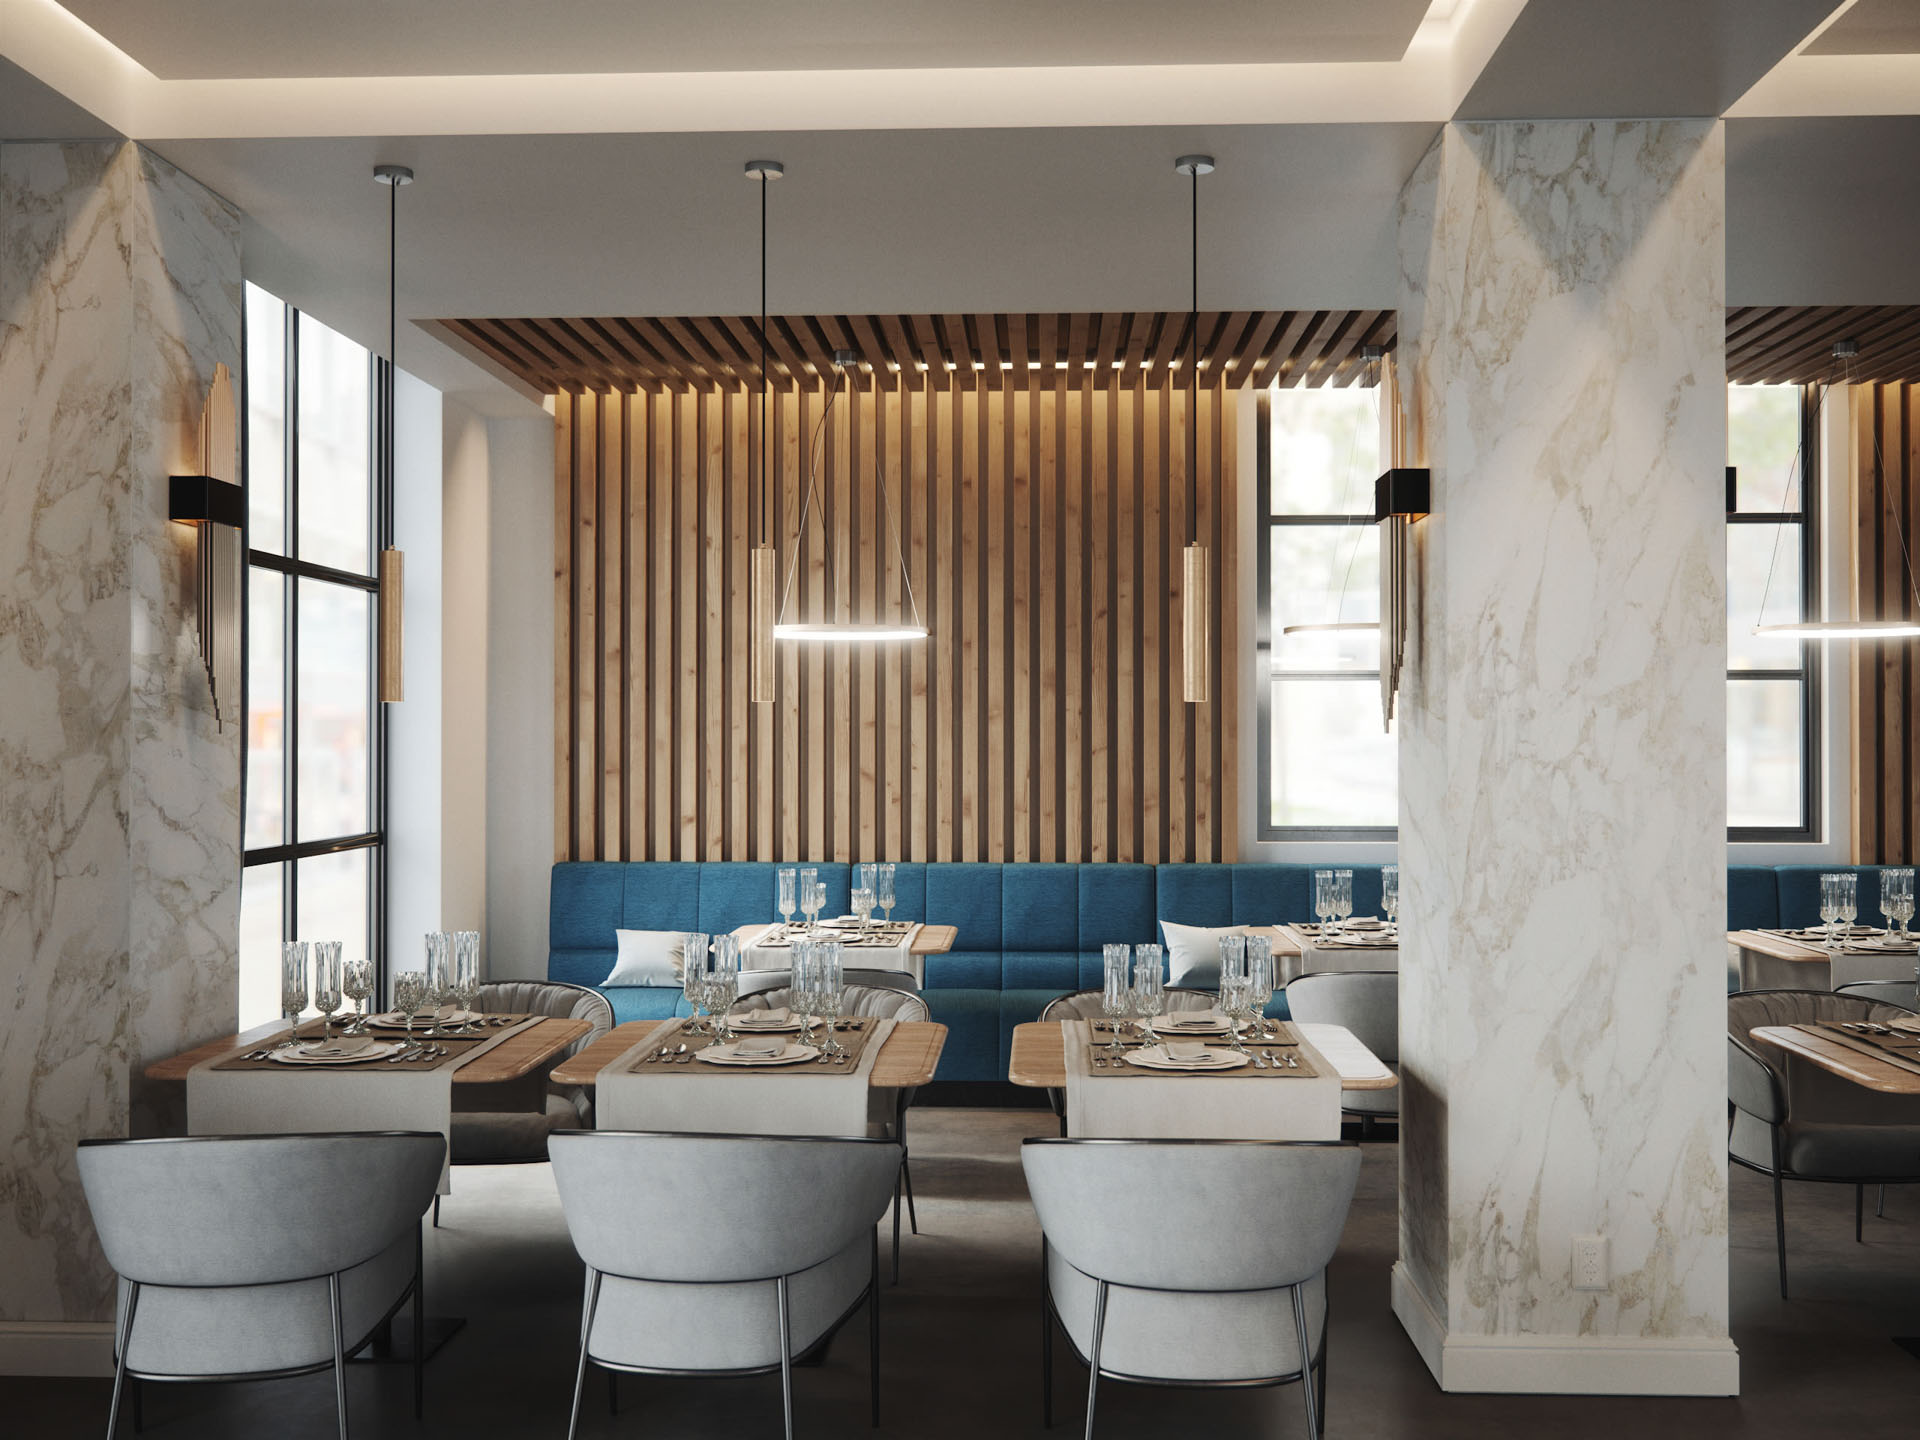 Architektonische Visualisierung eine Restaurants